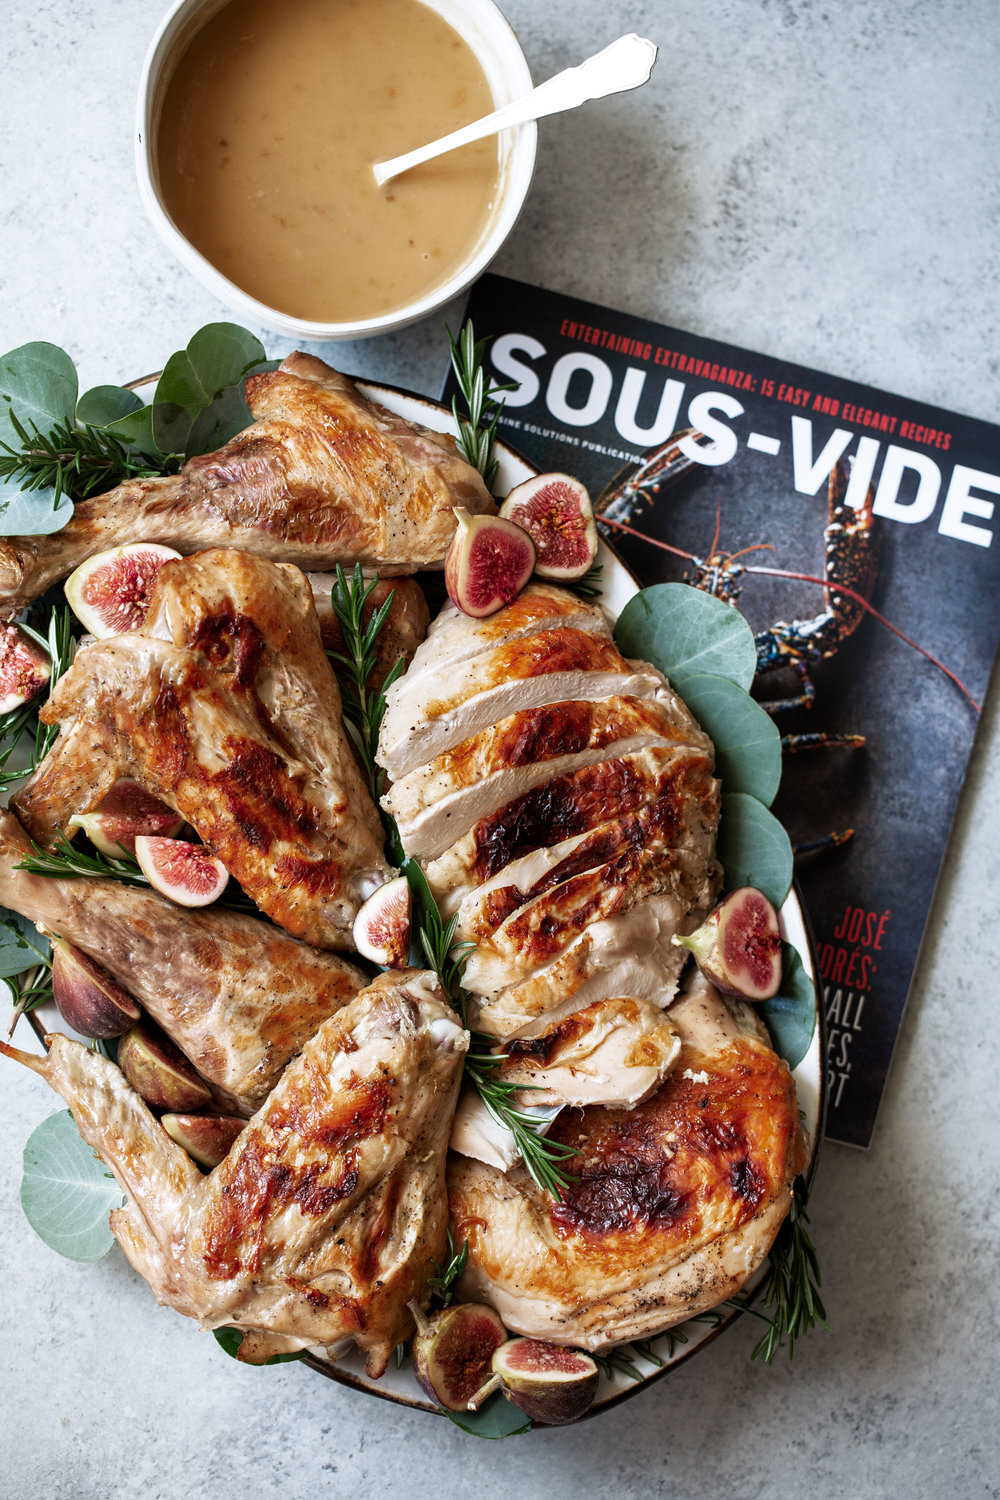 Lemon Rosemary Sous-Vide Turkey with White Wine Gravy recipe from sous-vide magazine